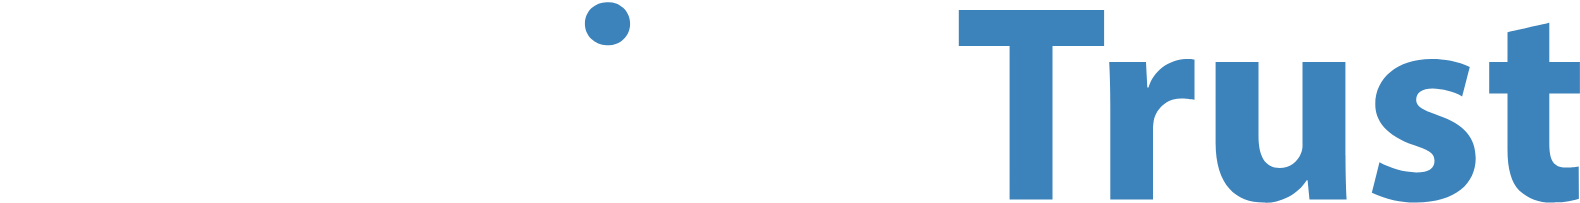 NetLink Trust logo large for dark backgrounds (transparent PNG)